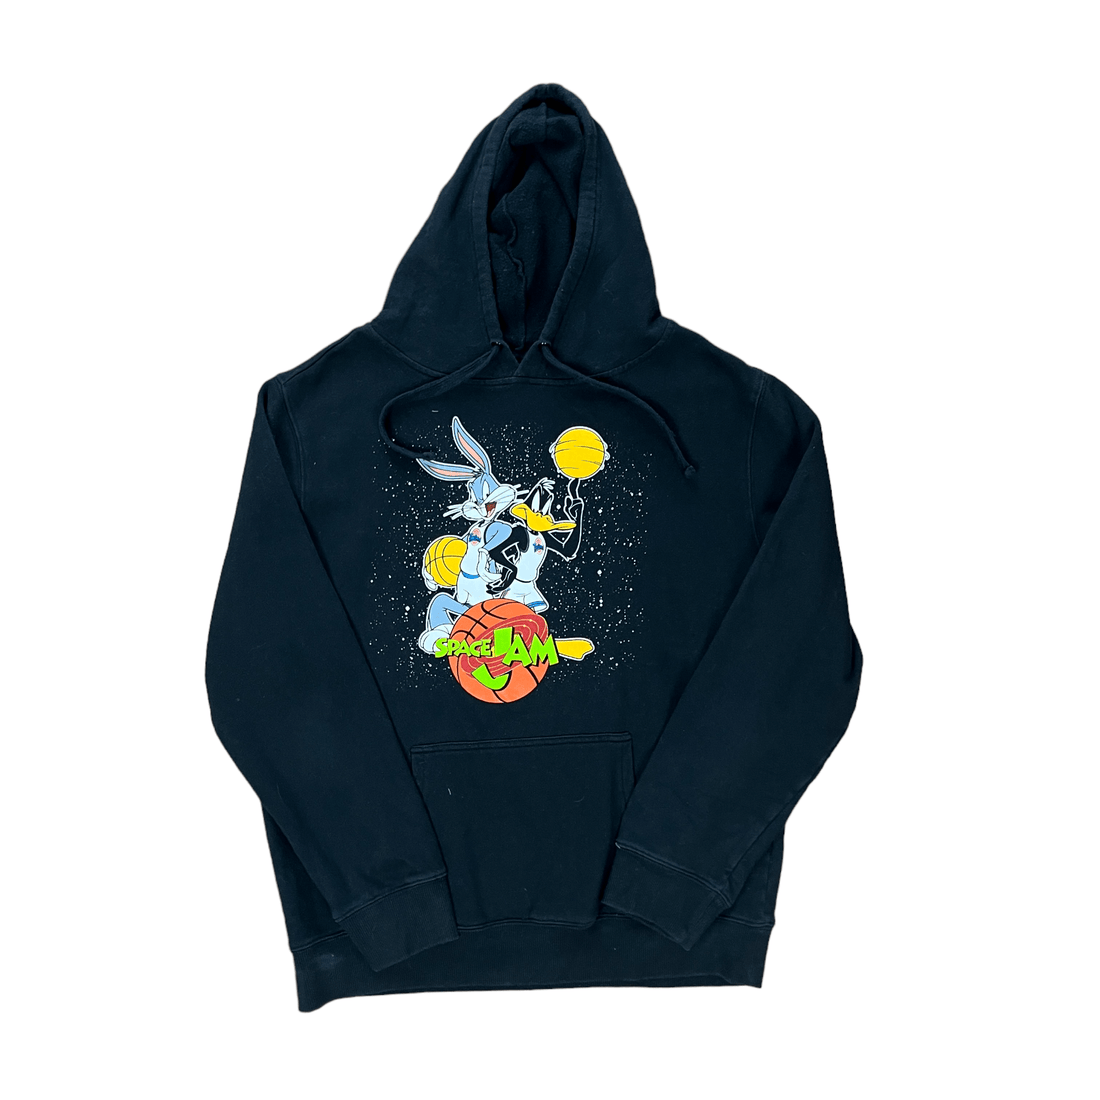 Vintage 90s Black Looney Tunes Space Jam Hoodie - Medium - The Streetwear Studio